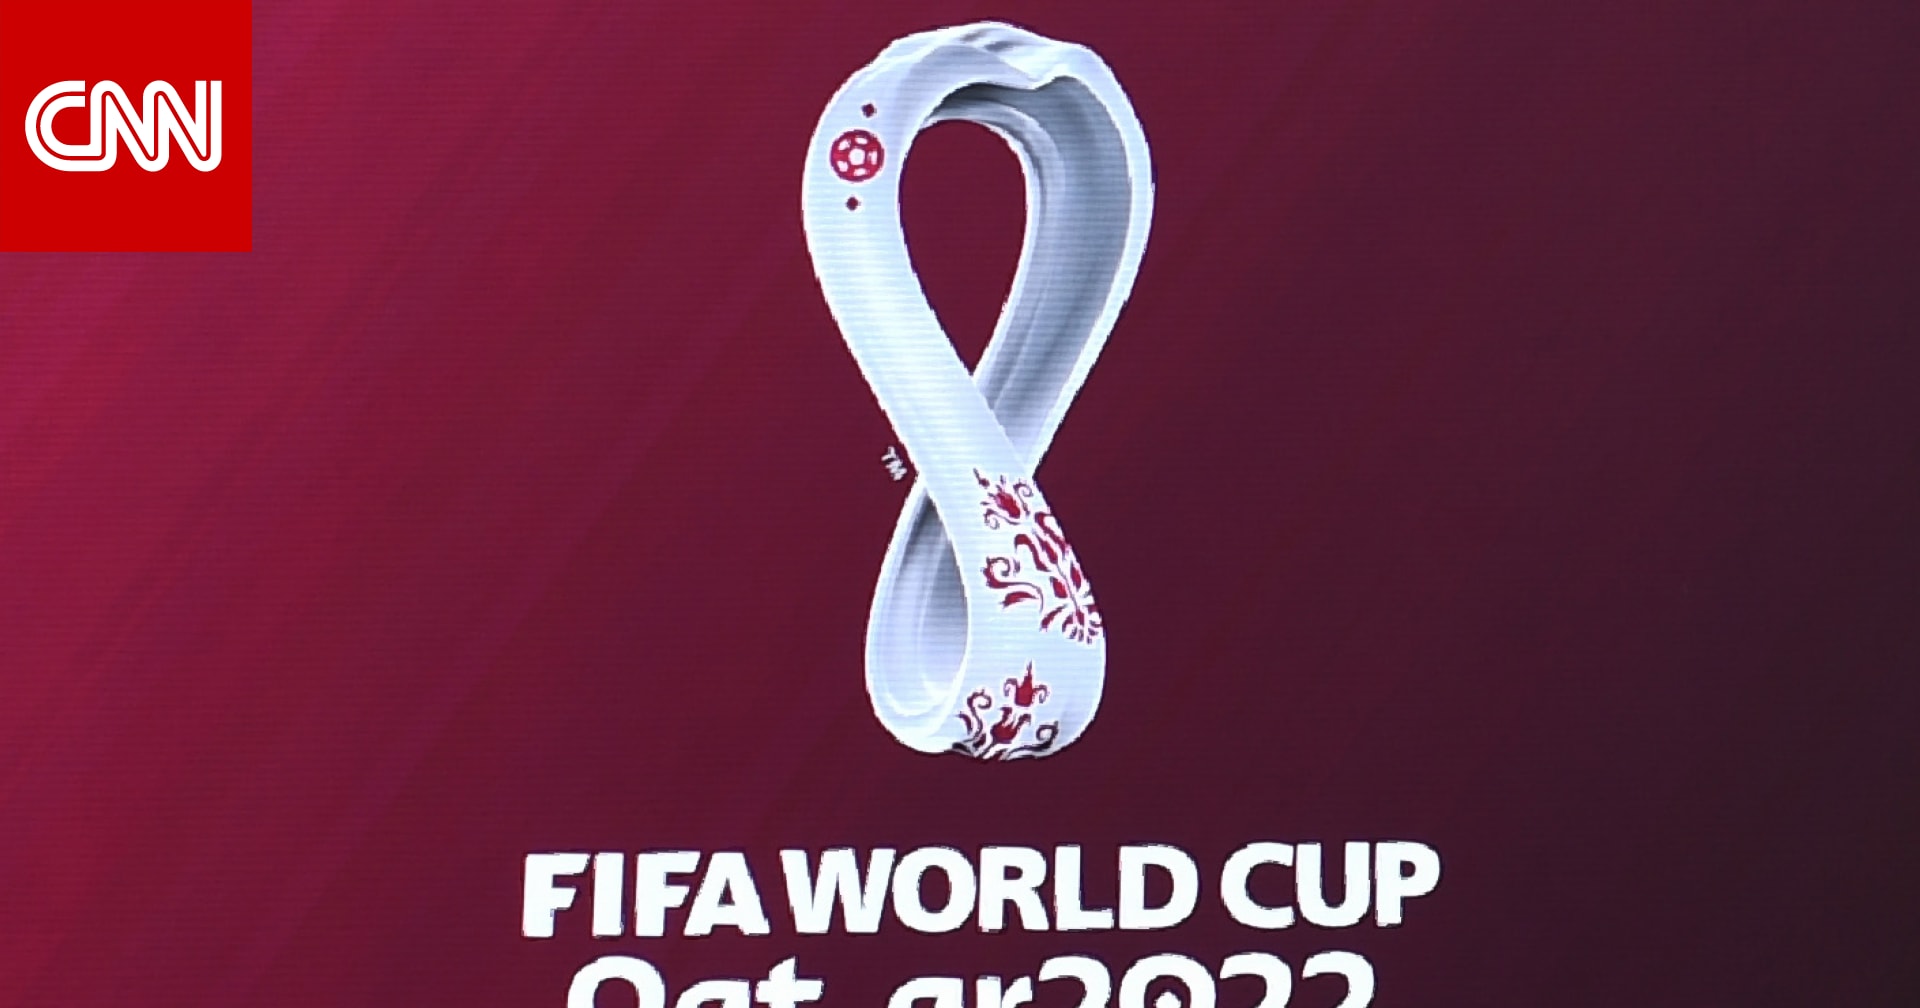 صورة كم عدد المنتخبات التي تشارك في كاس العالم 2022 مونديال قطر